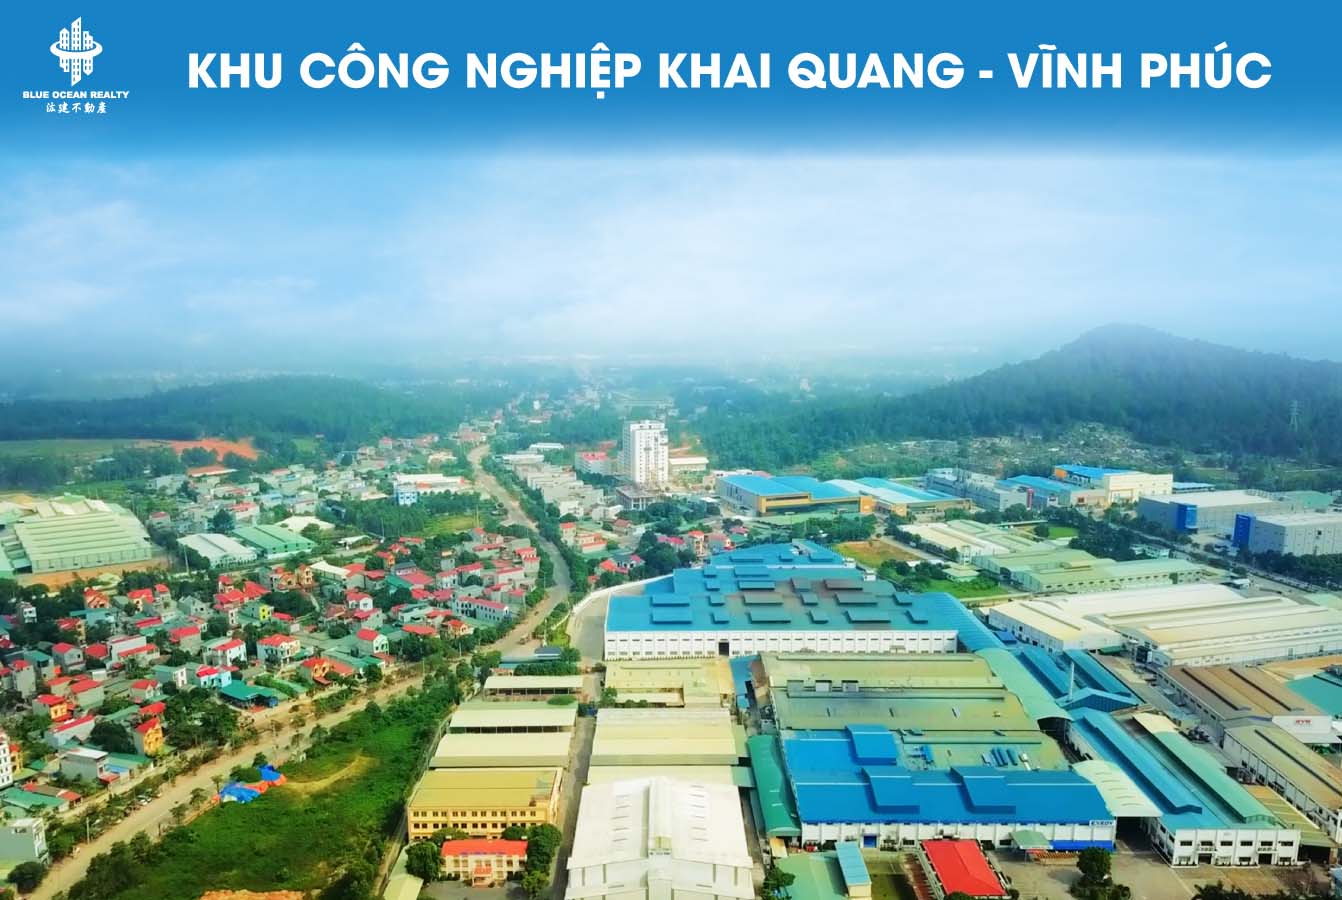 Khu công nghiệp (KCN) Khai Quang-Vĩnh Phúc